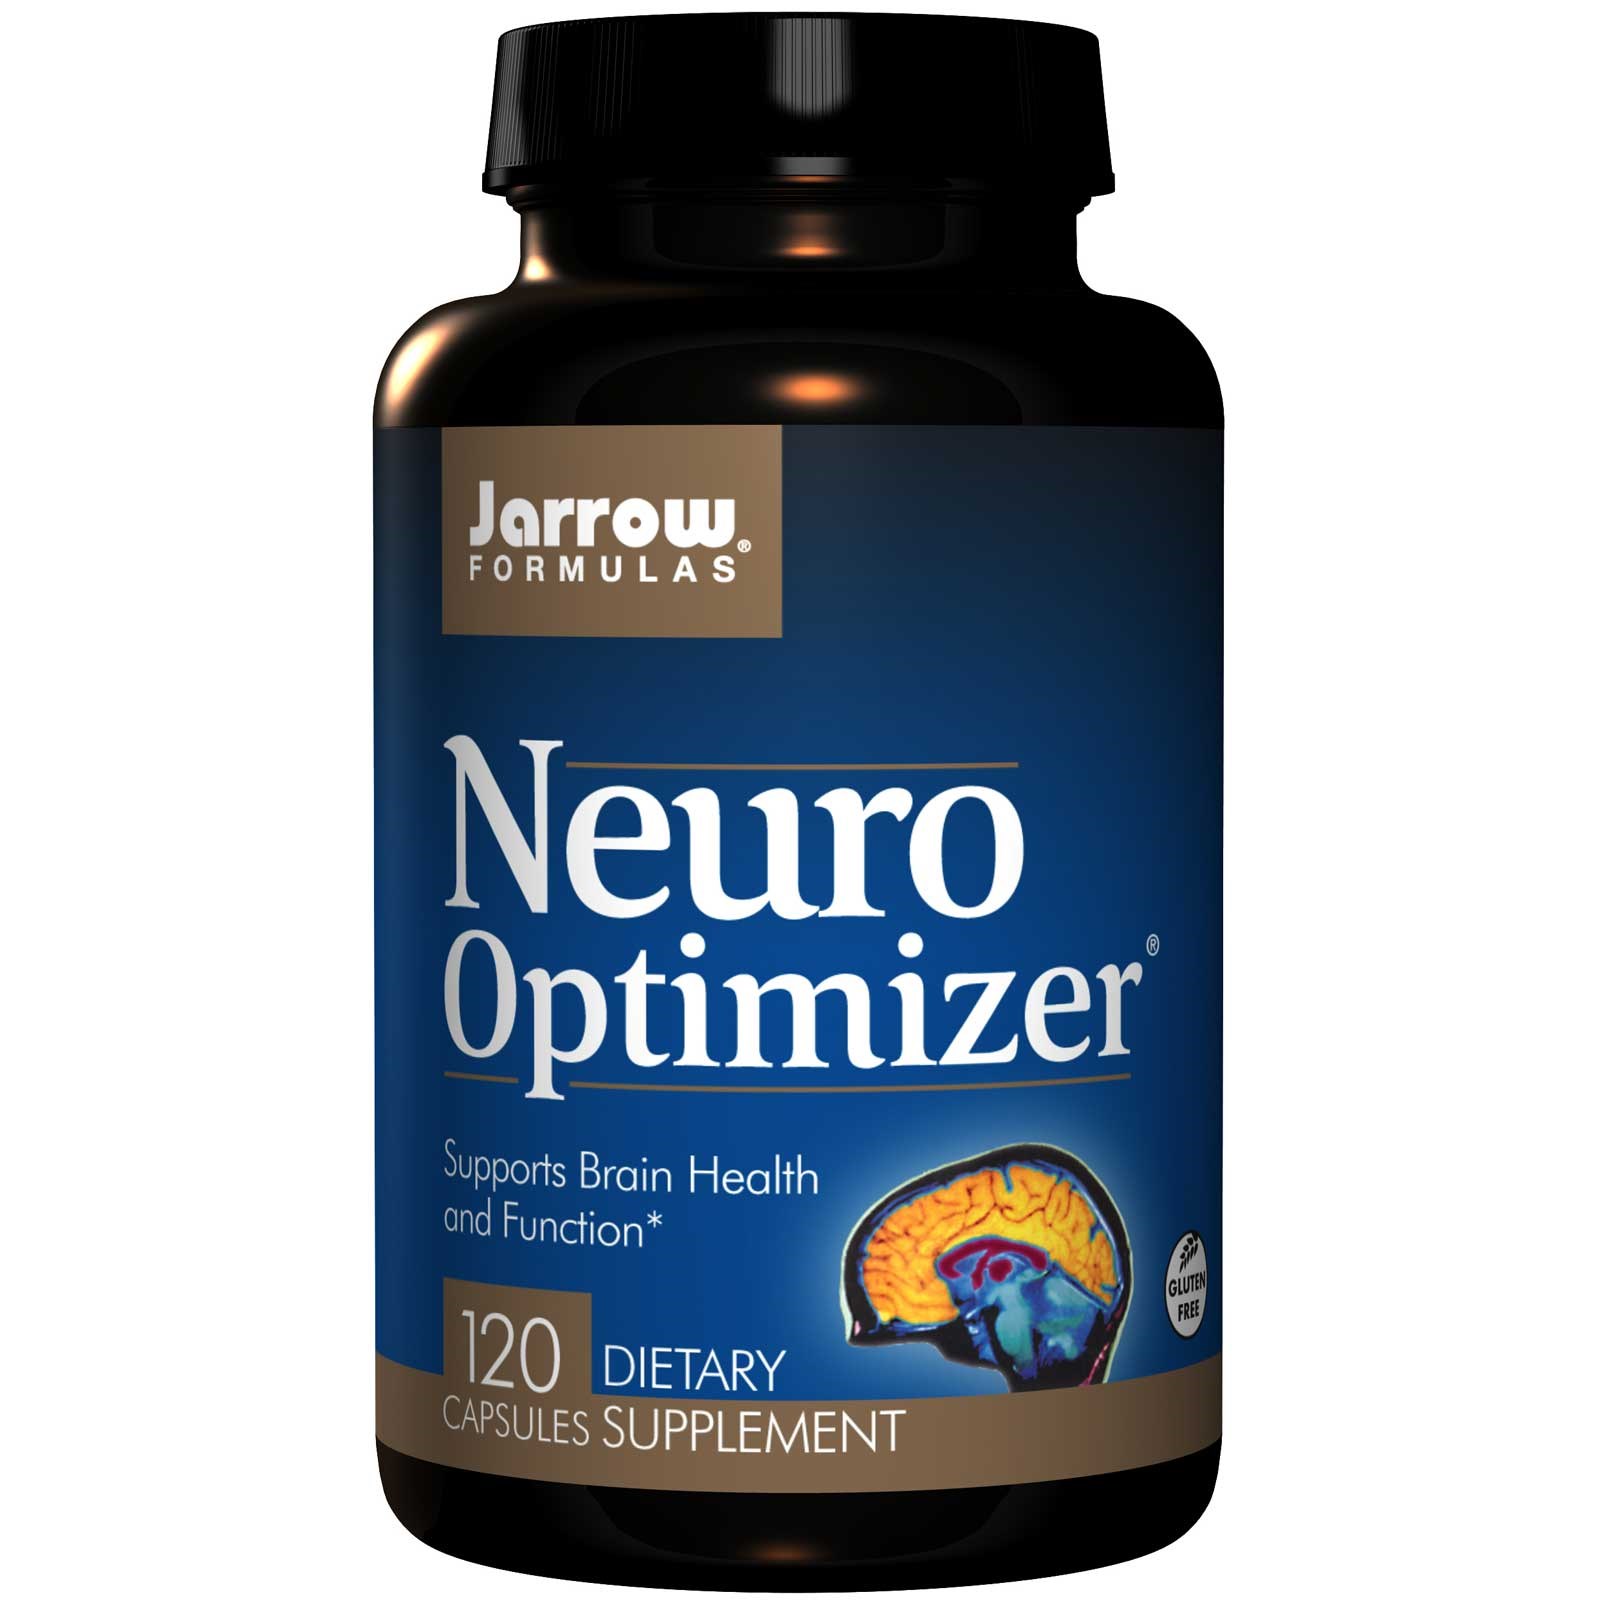 Viên uống bổ não tăng cường trí nhớ Neuro Optimizer Jarrow của Mỹ